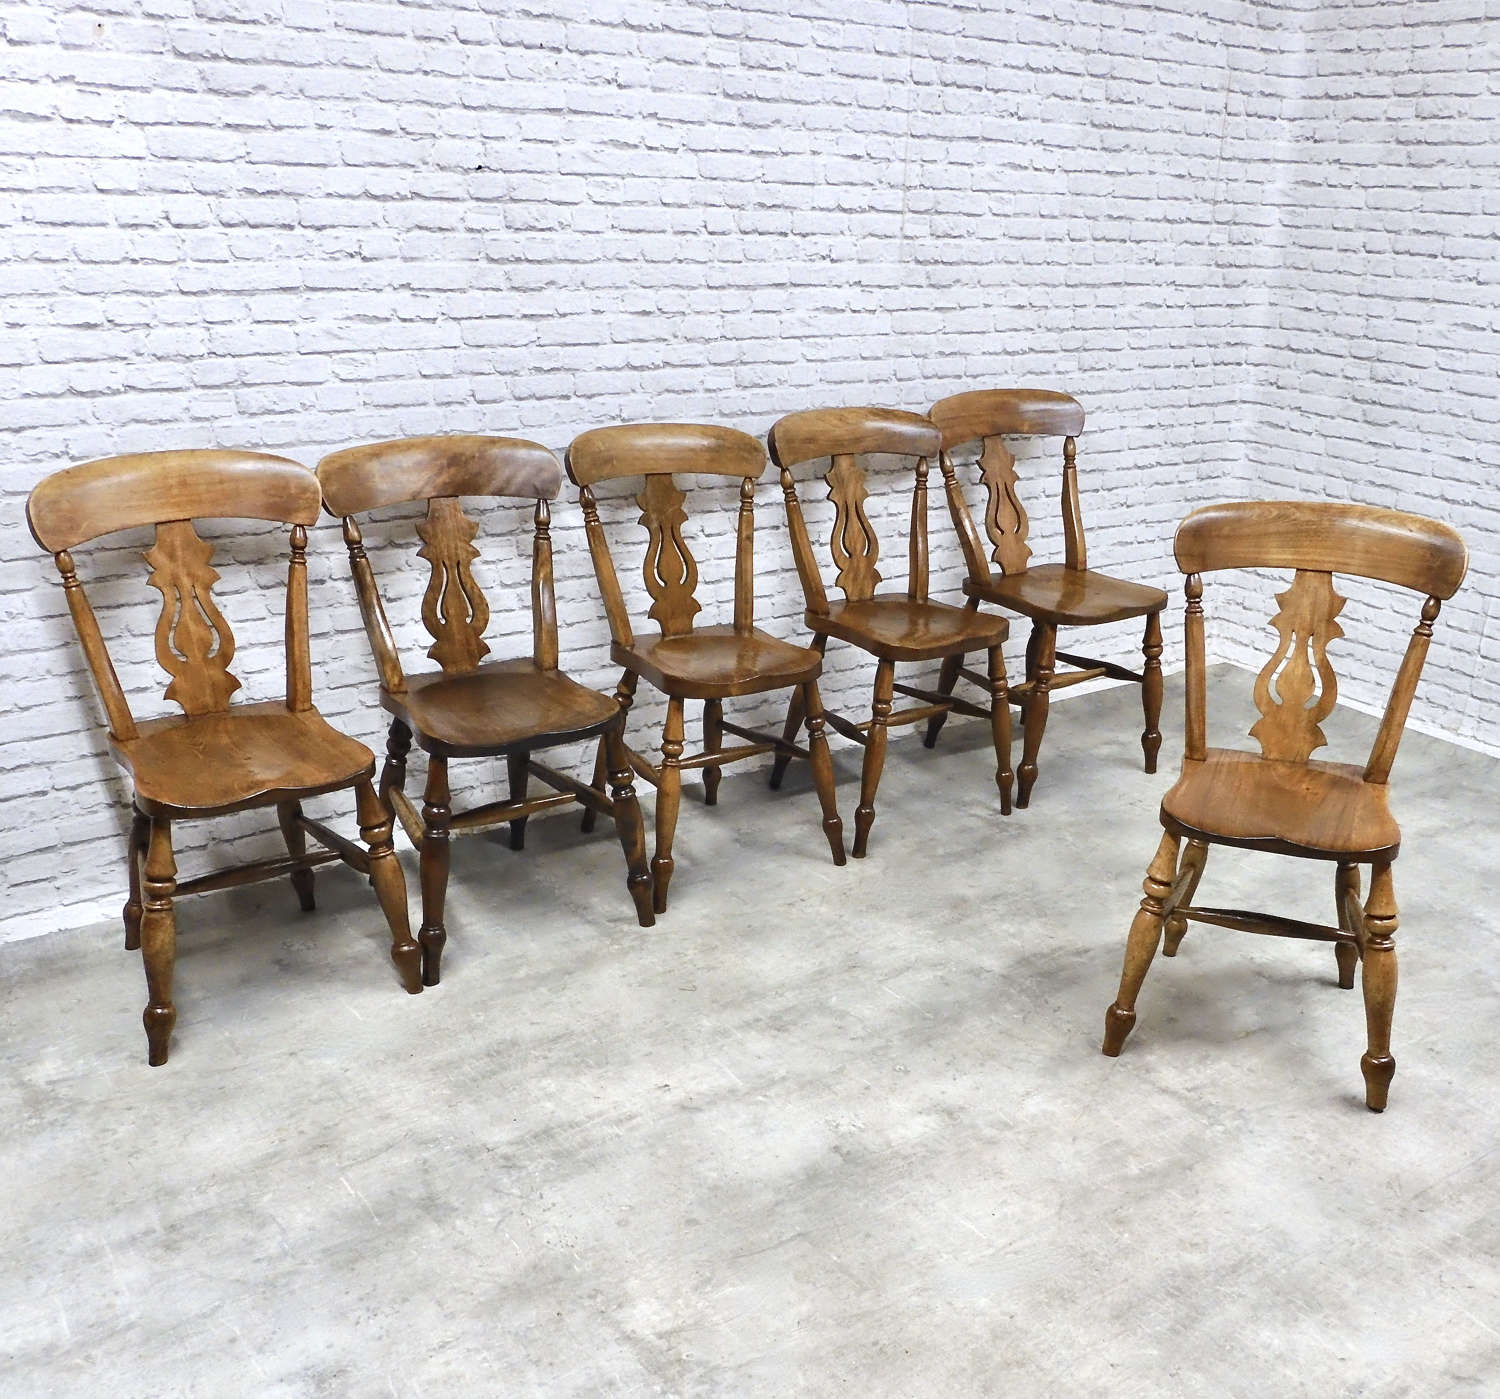 C19th Farmhouse Kitchen Chairs